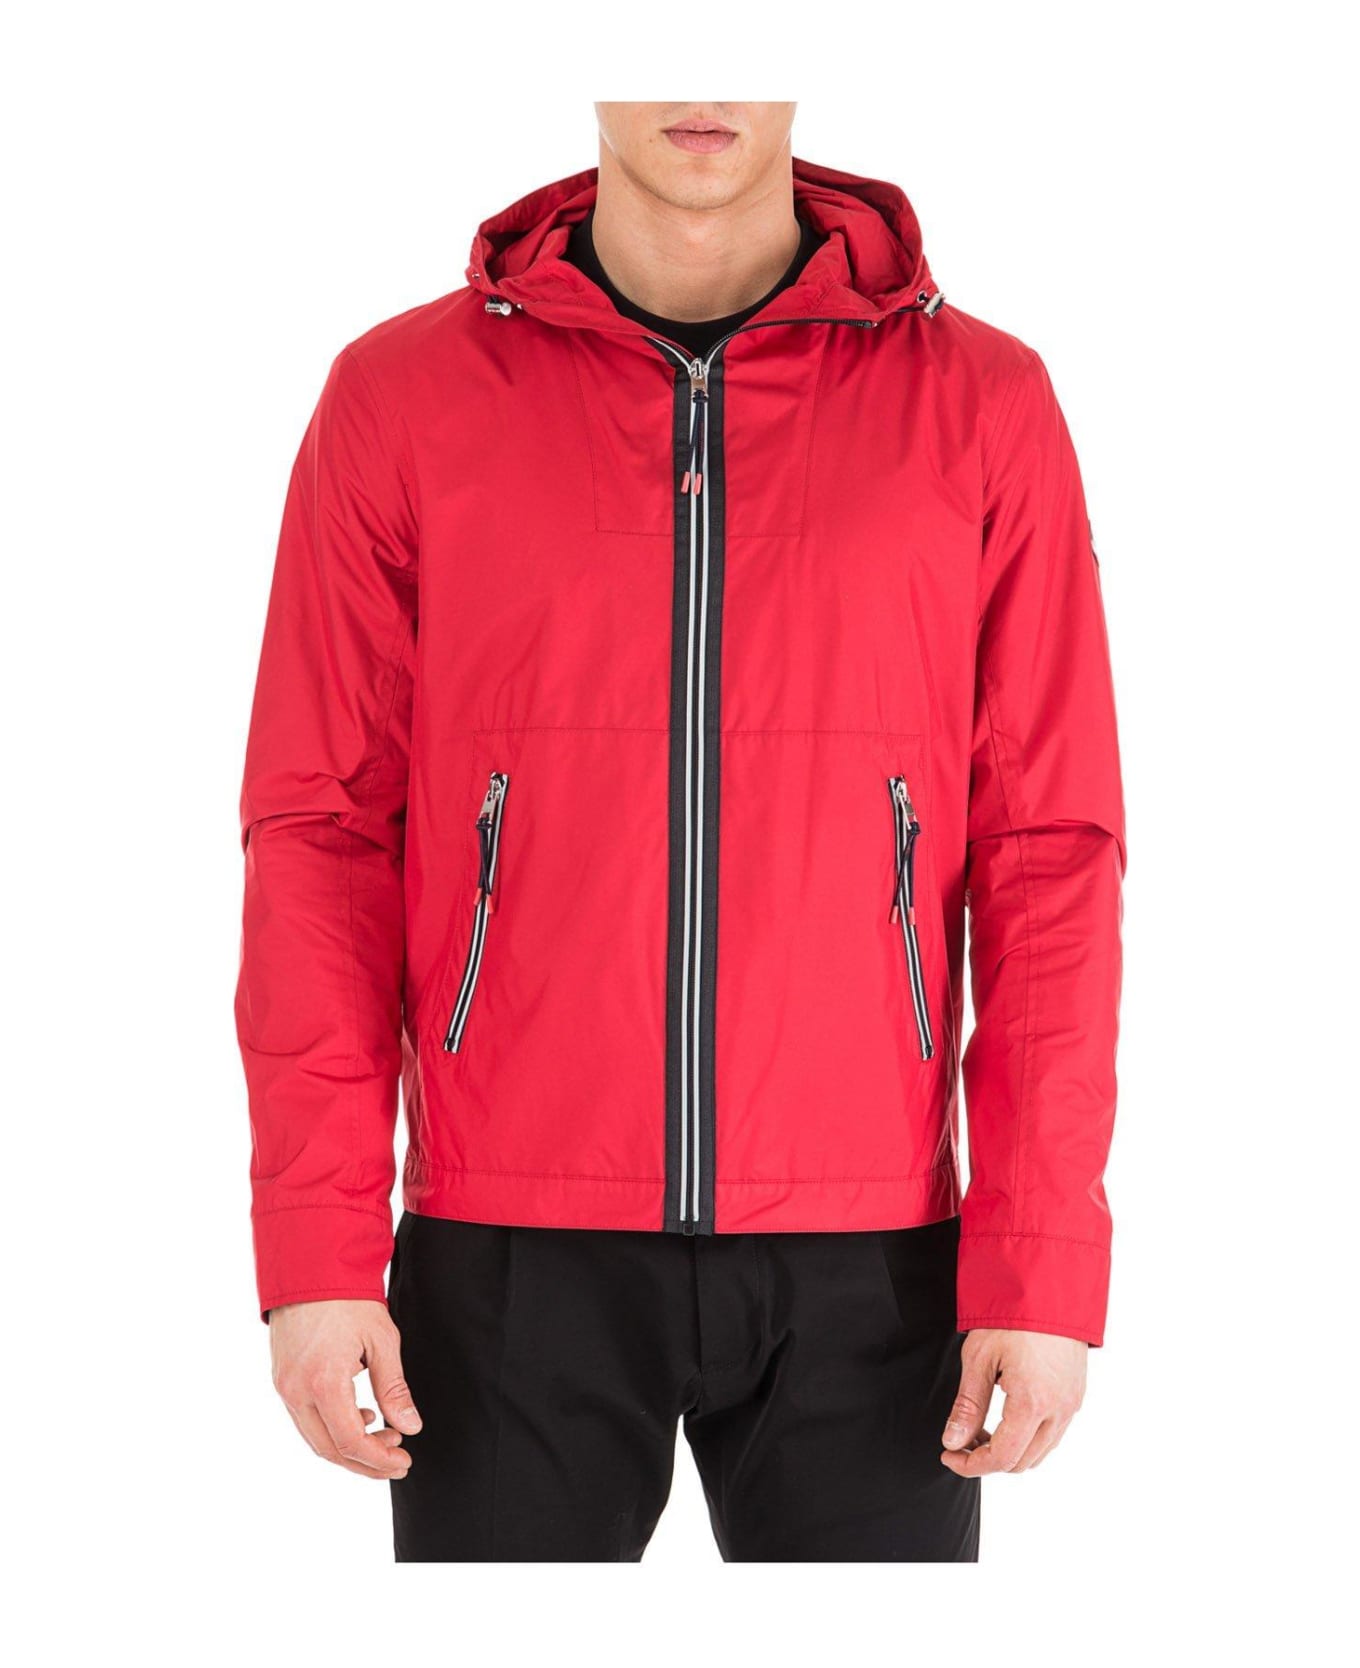 Michael Kors Tech Hooded Zip Jacket - red ジャケット